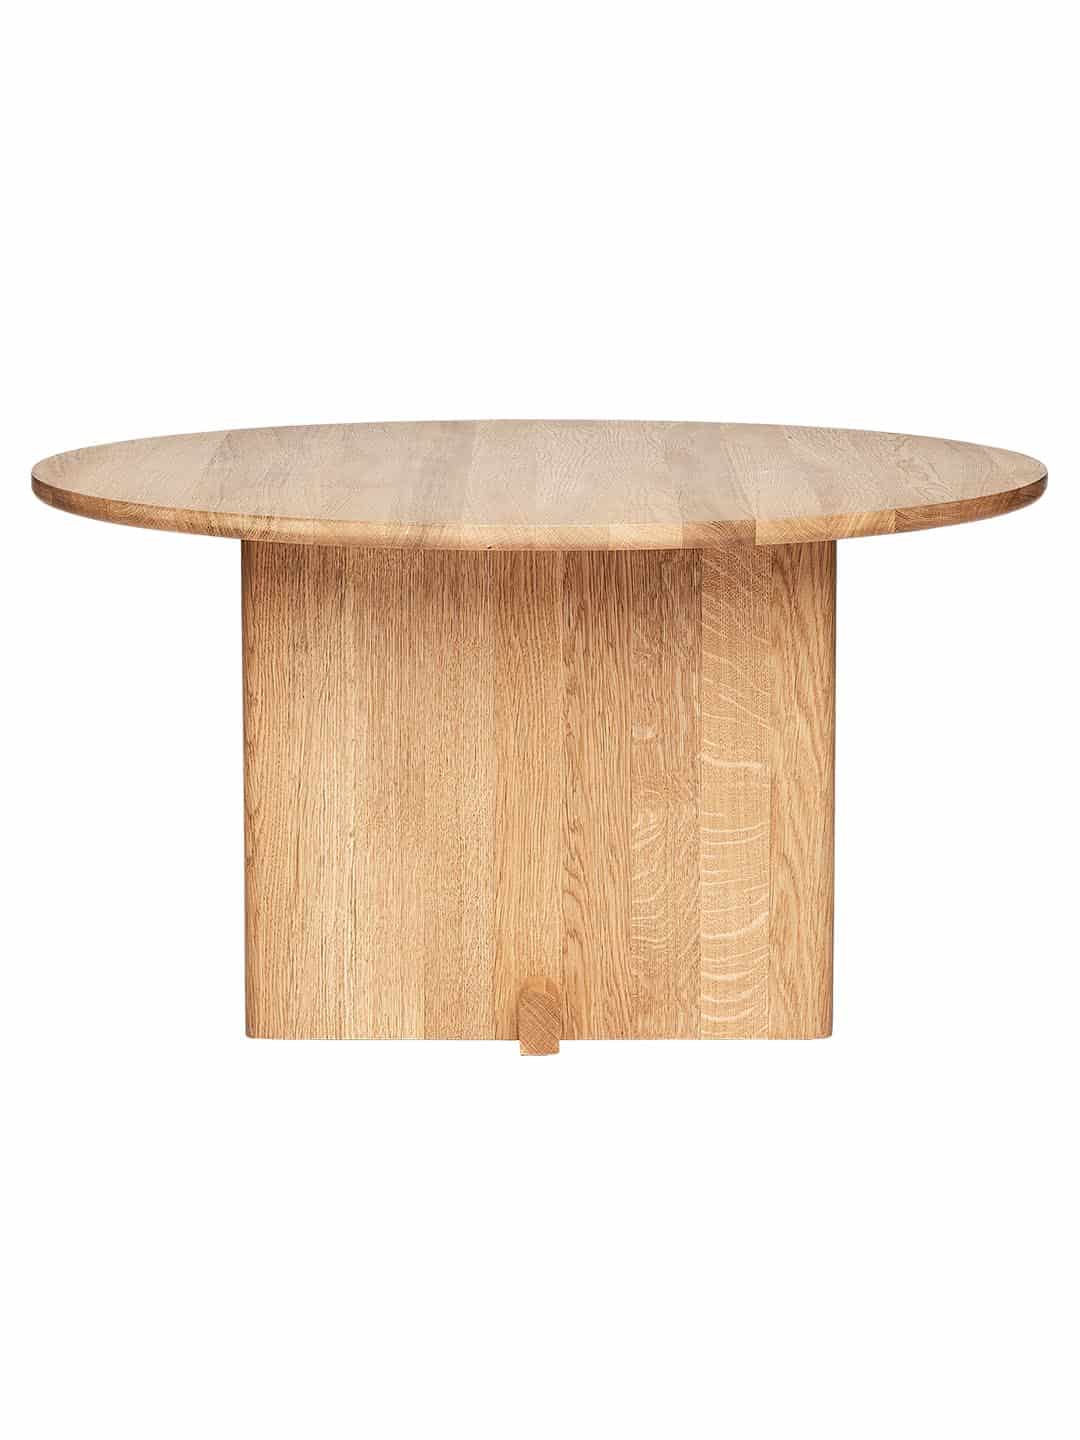 Журнальный стол Fogia Koku премиум класса из натуральной древесины